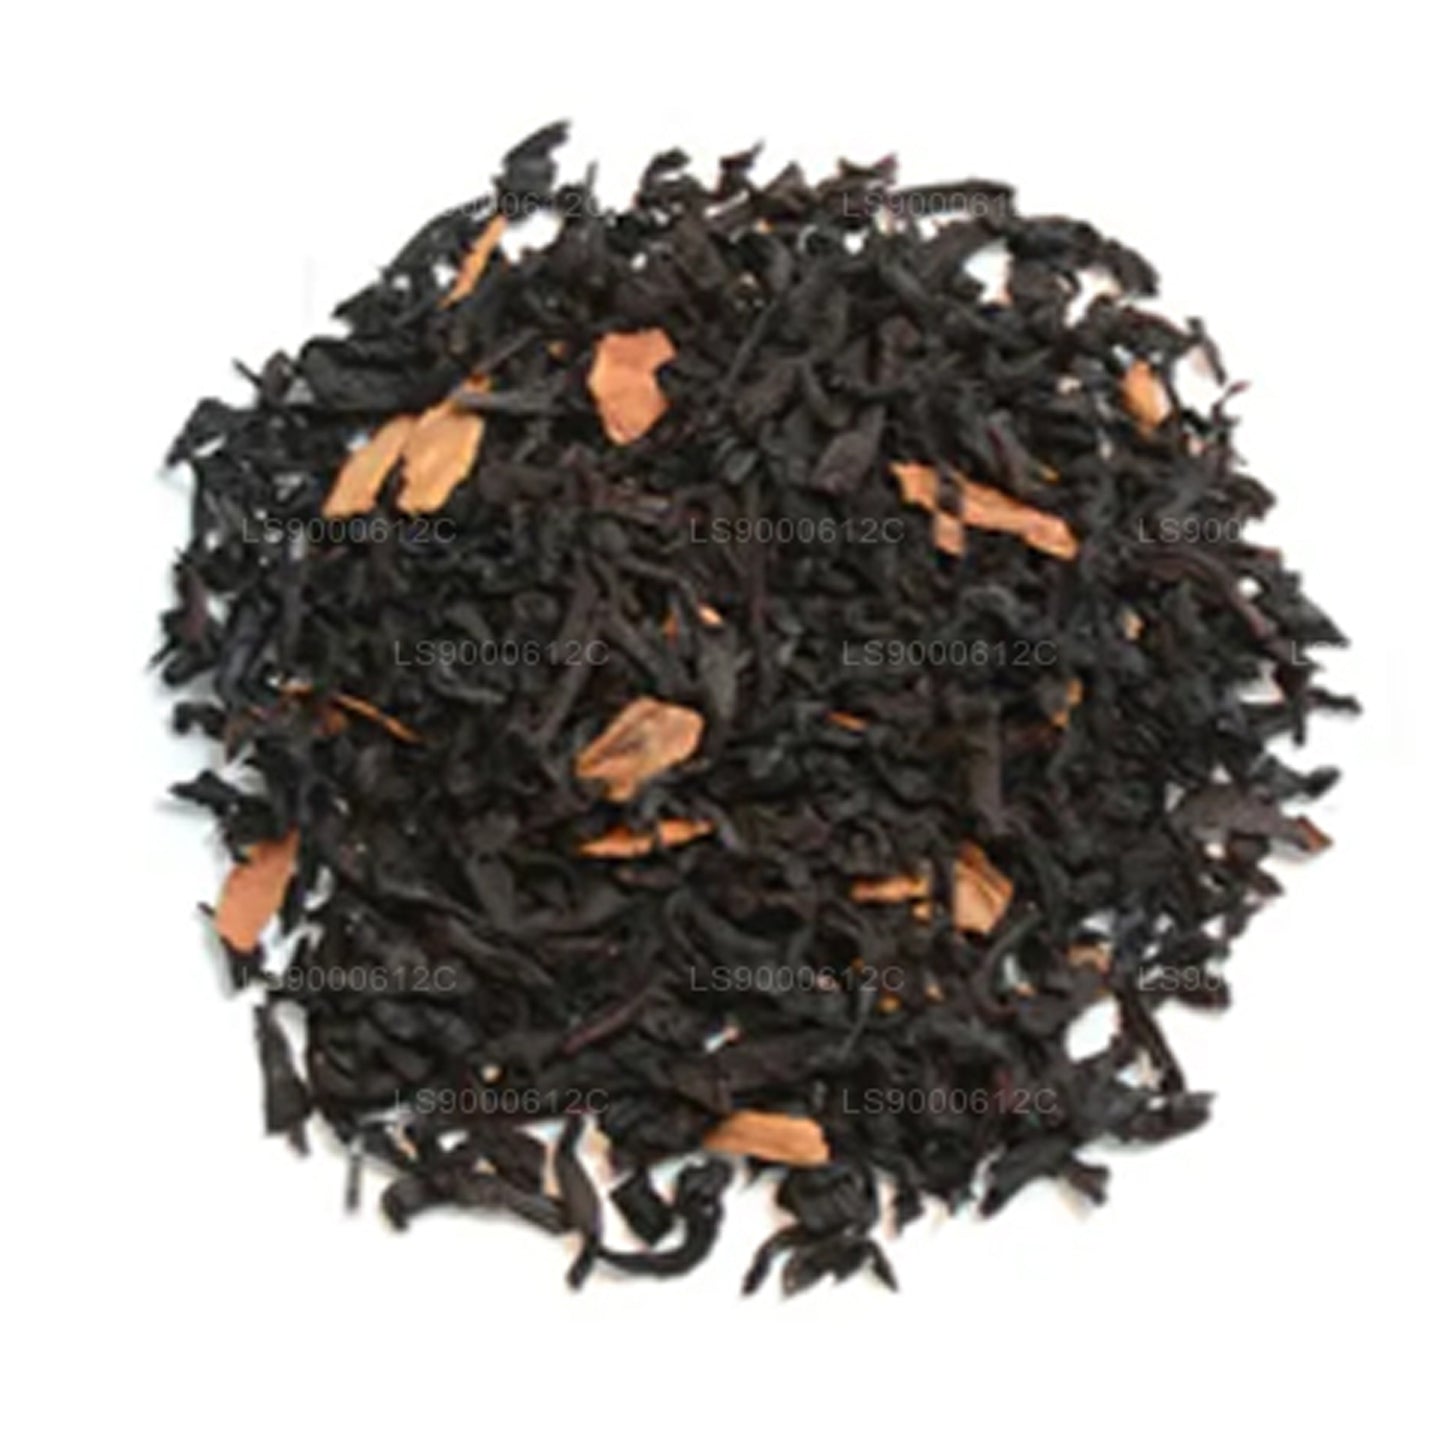 Jaf Tea Seasonal Cheer - Sort te aromatiseret med karamel, vanilje og kanel (50 g)